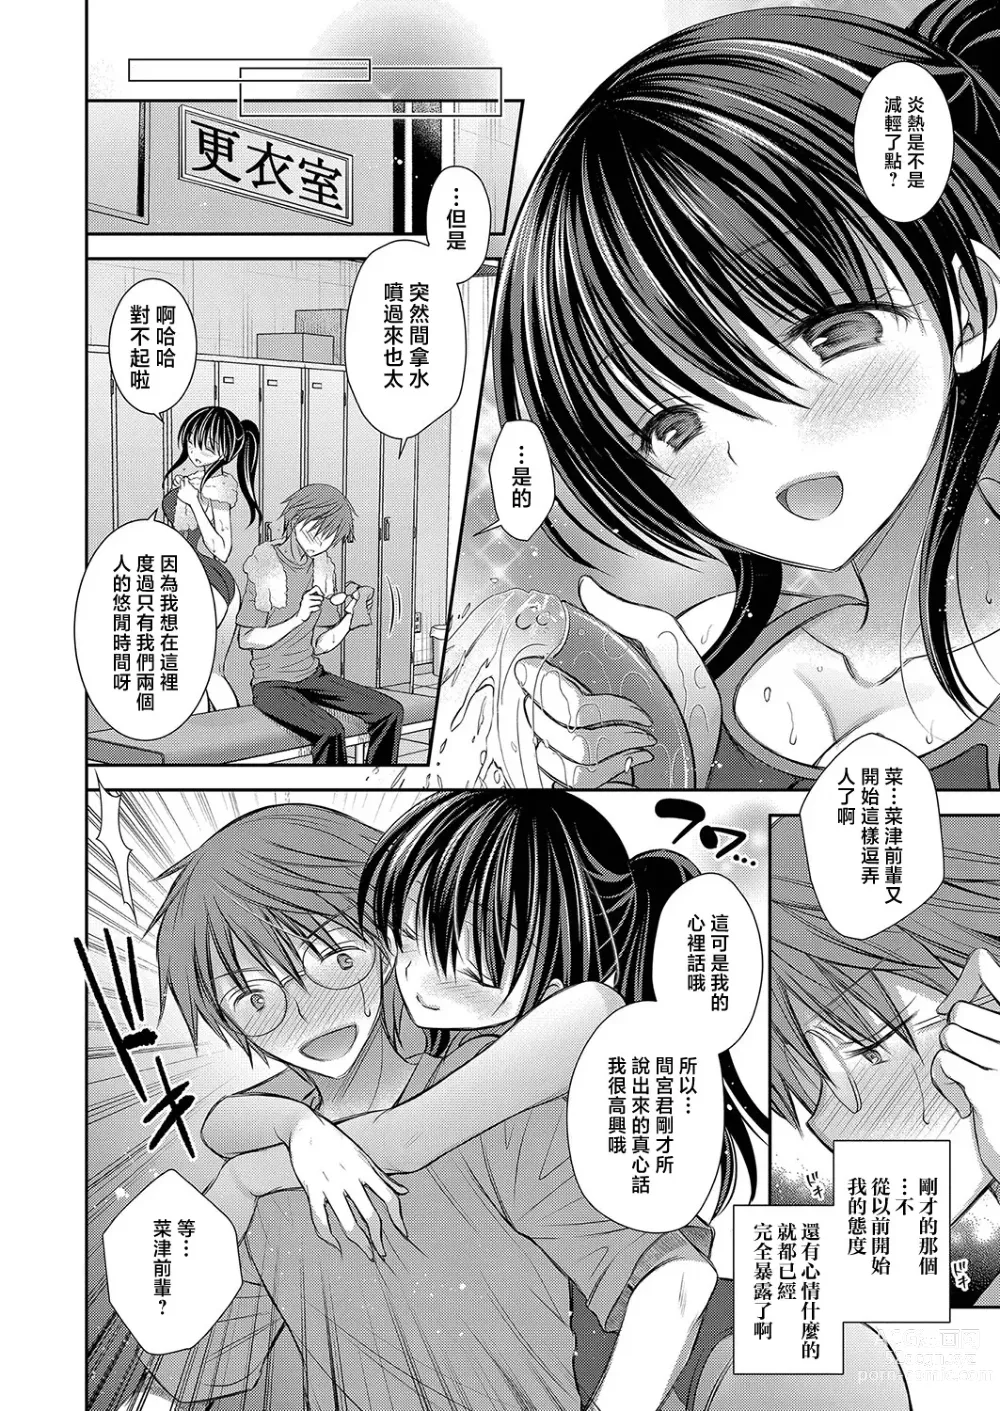 Page 4 of manga Natsu no Sei da yo